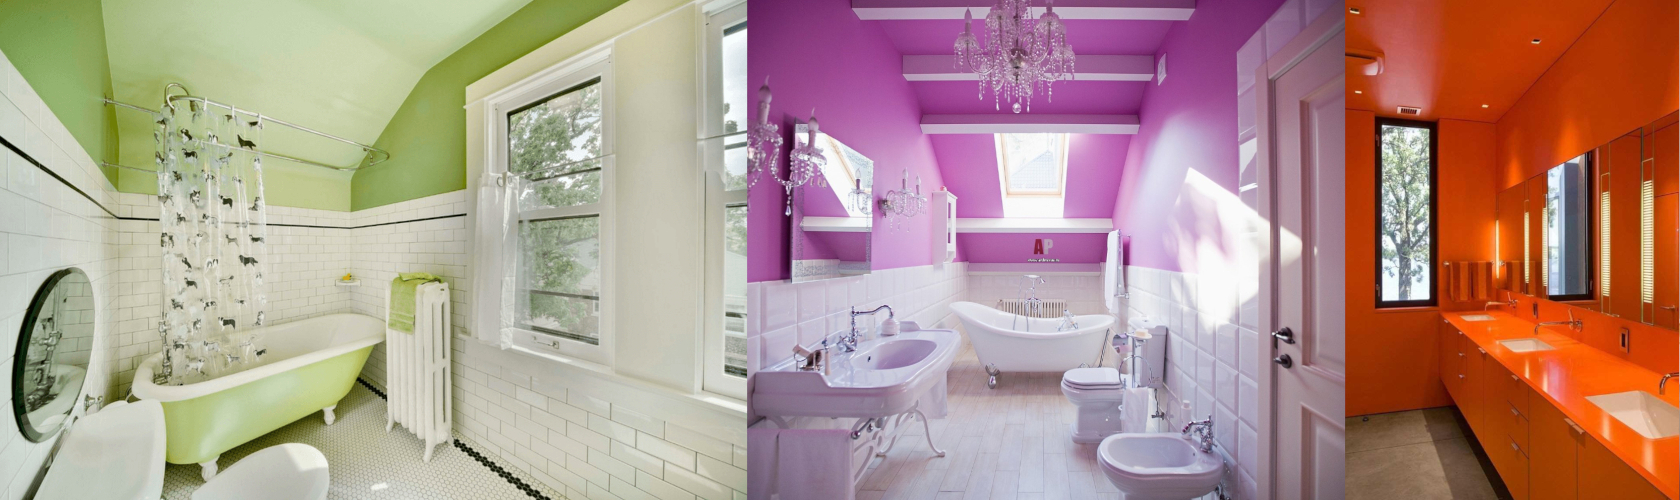 Как покрасить потолок в ванной комнате: пошаговая инструкция — Статьи от  интернет-магазина «Строительный Двор»